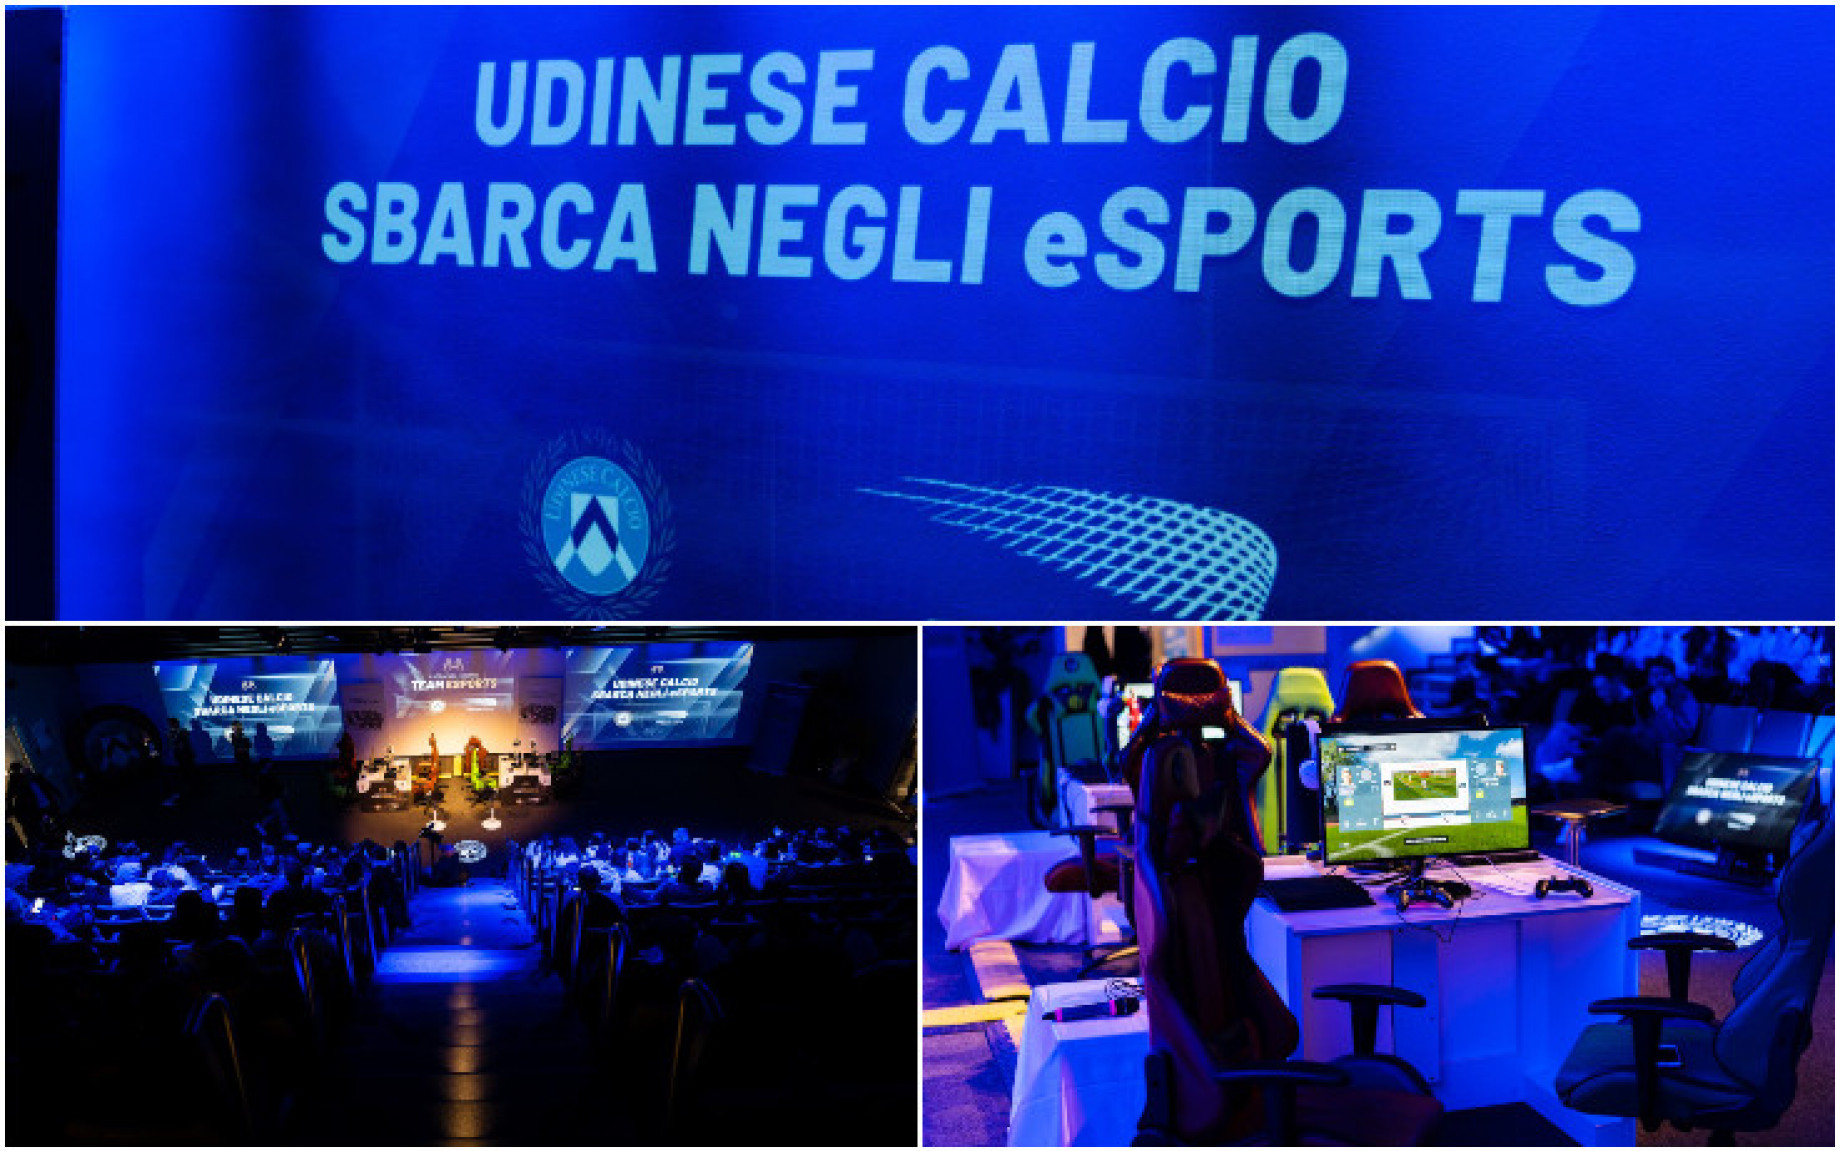 Udinese_eSports_4.jpg